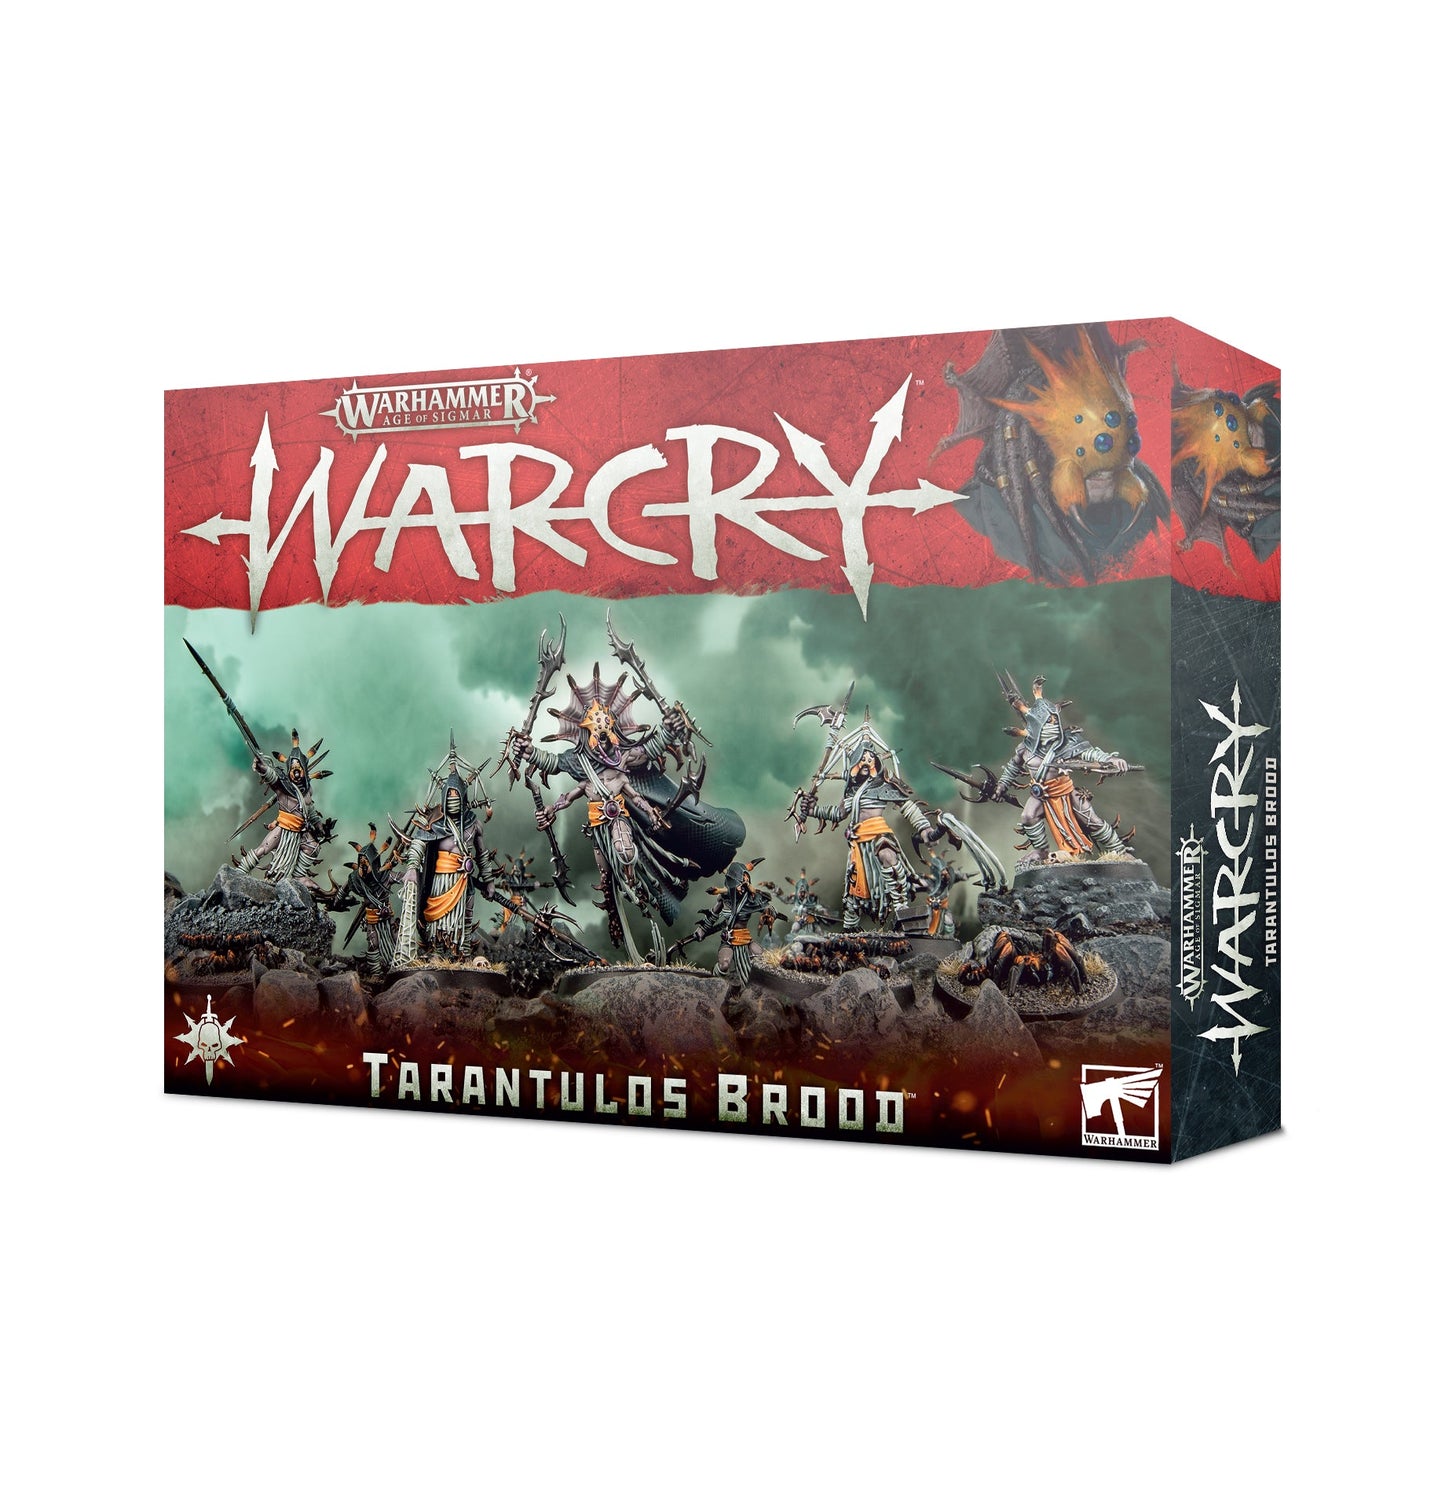 Warcry: Tarantulos Brood - Gamescape